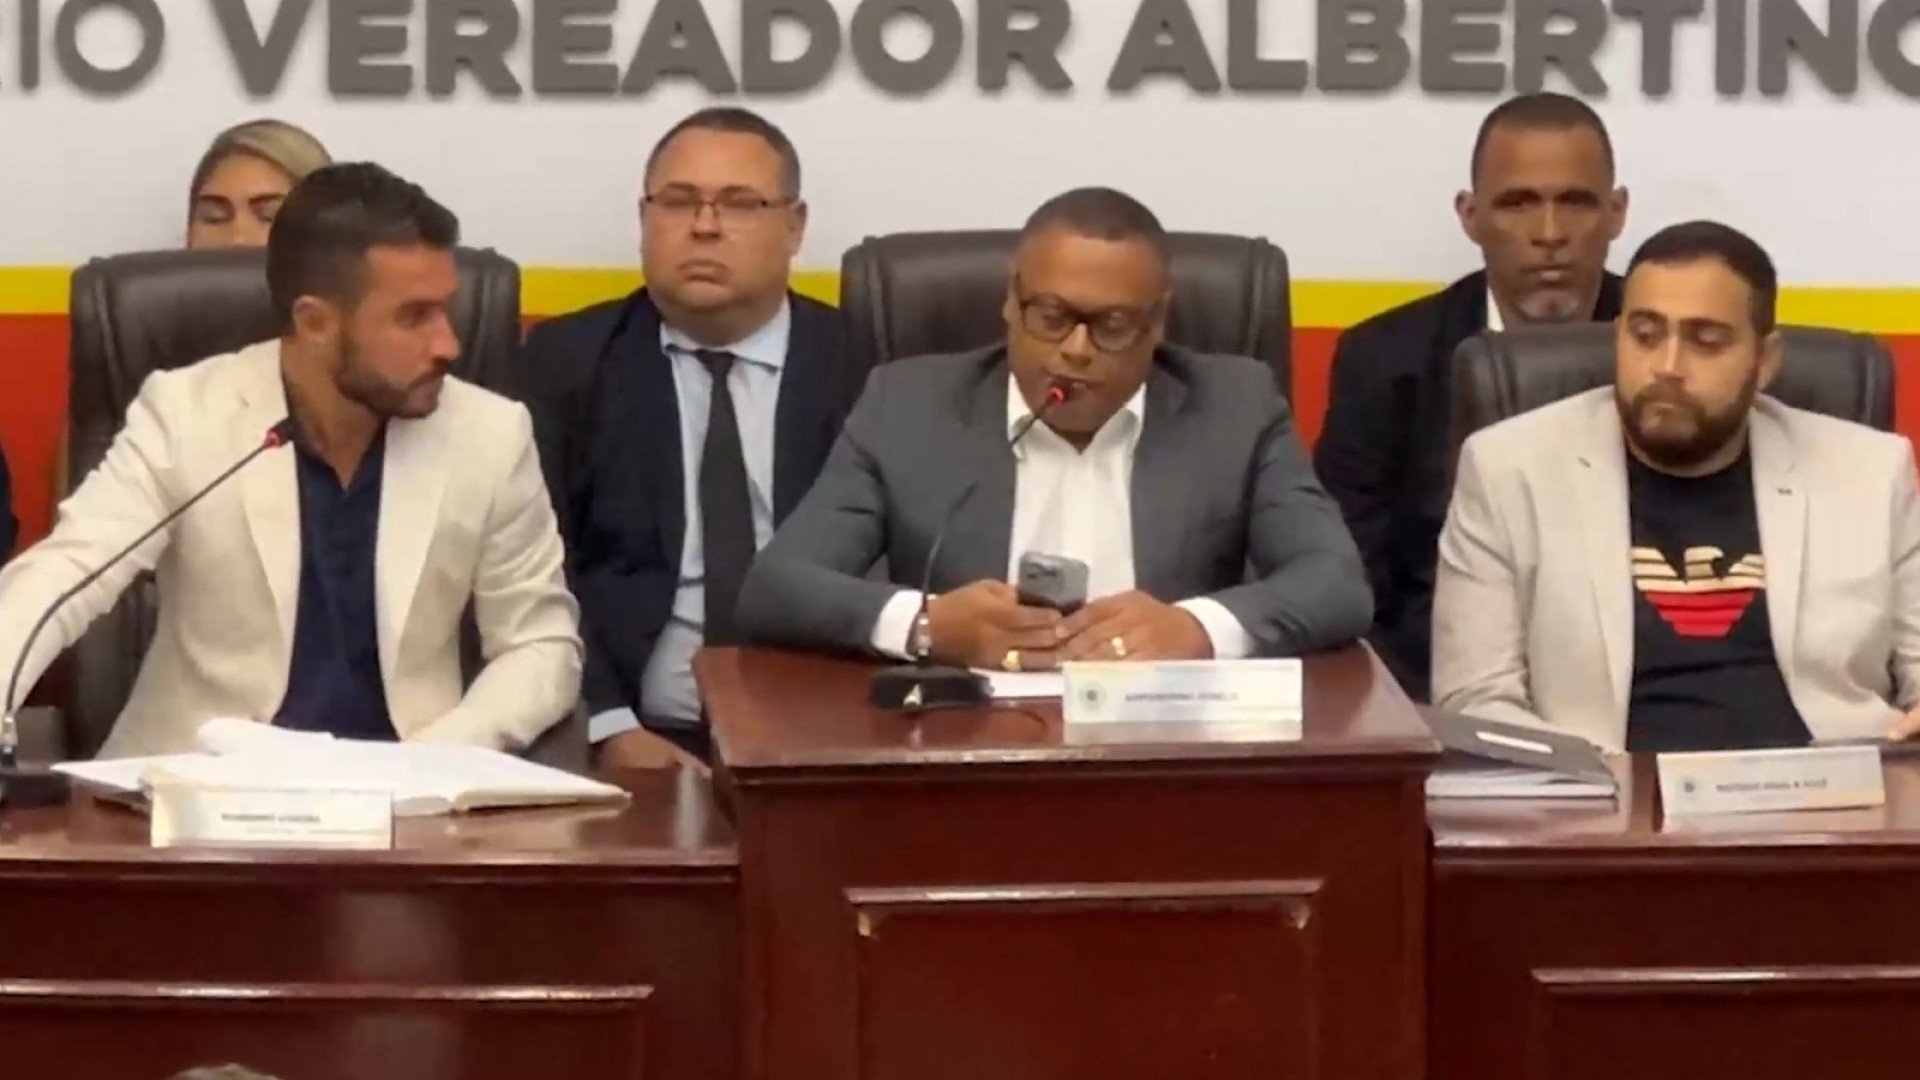 O presidente da Câmara Municipal, Armandinho Penelis (ao centro), destacou que os vereadores cumpriram o papel de legislar - Divulgação